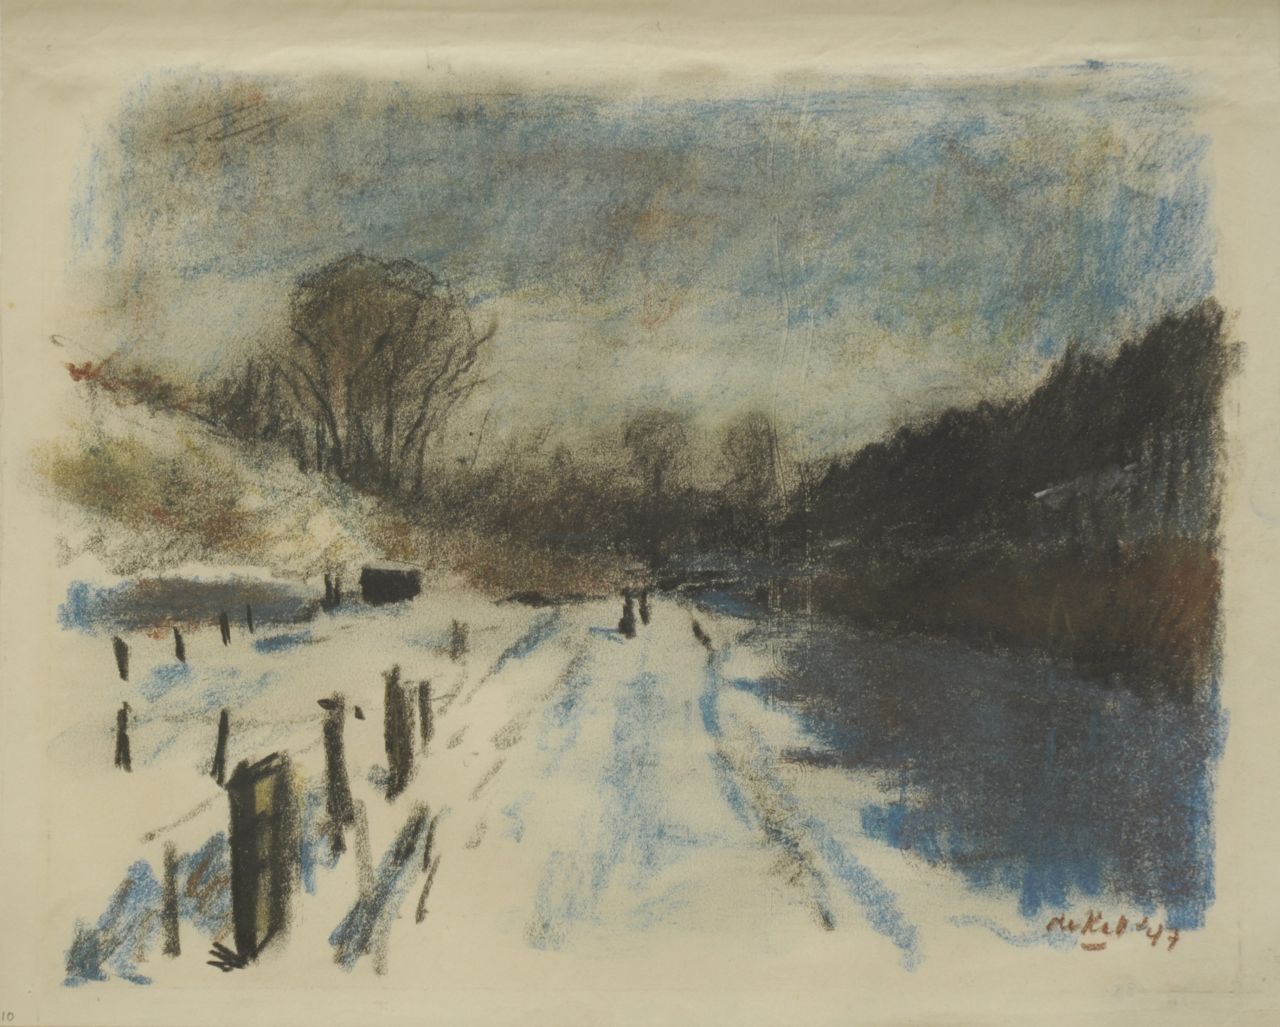 Kat O.B. de | 'Otto' Boudewijn de Kat, Snow landscape, pastel on paper 21.8 x 27.0 cm, signed l.r. and dated '47